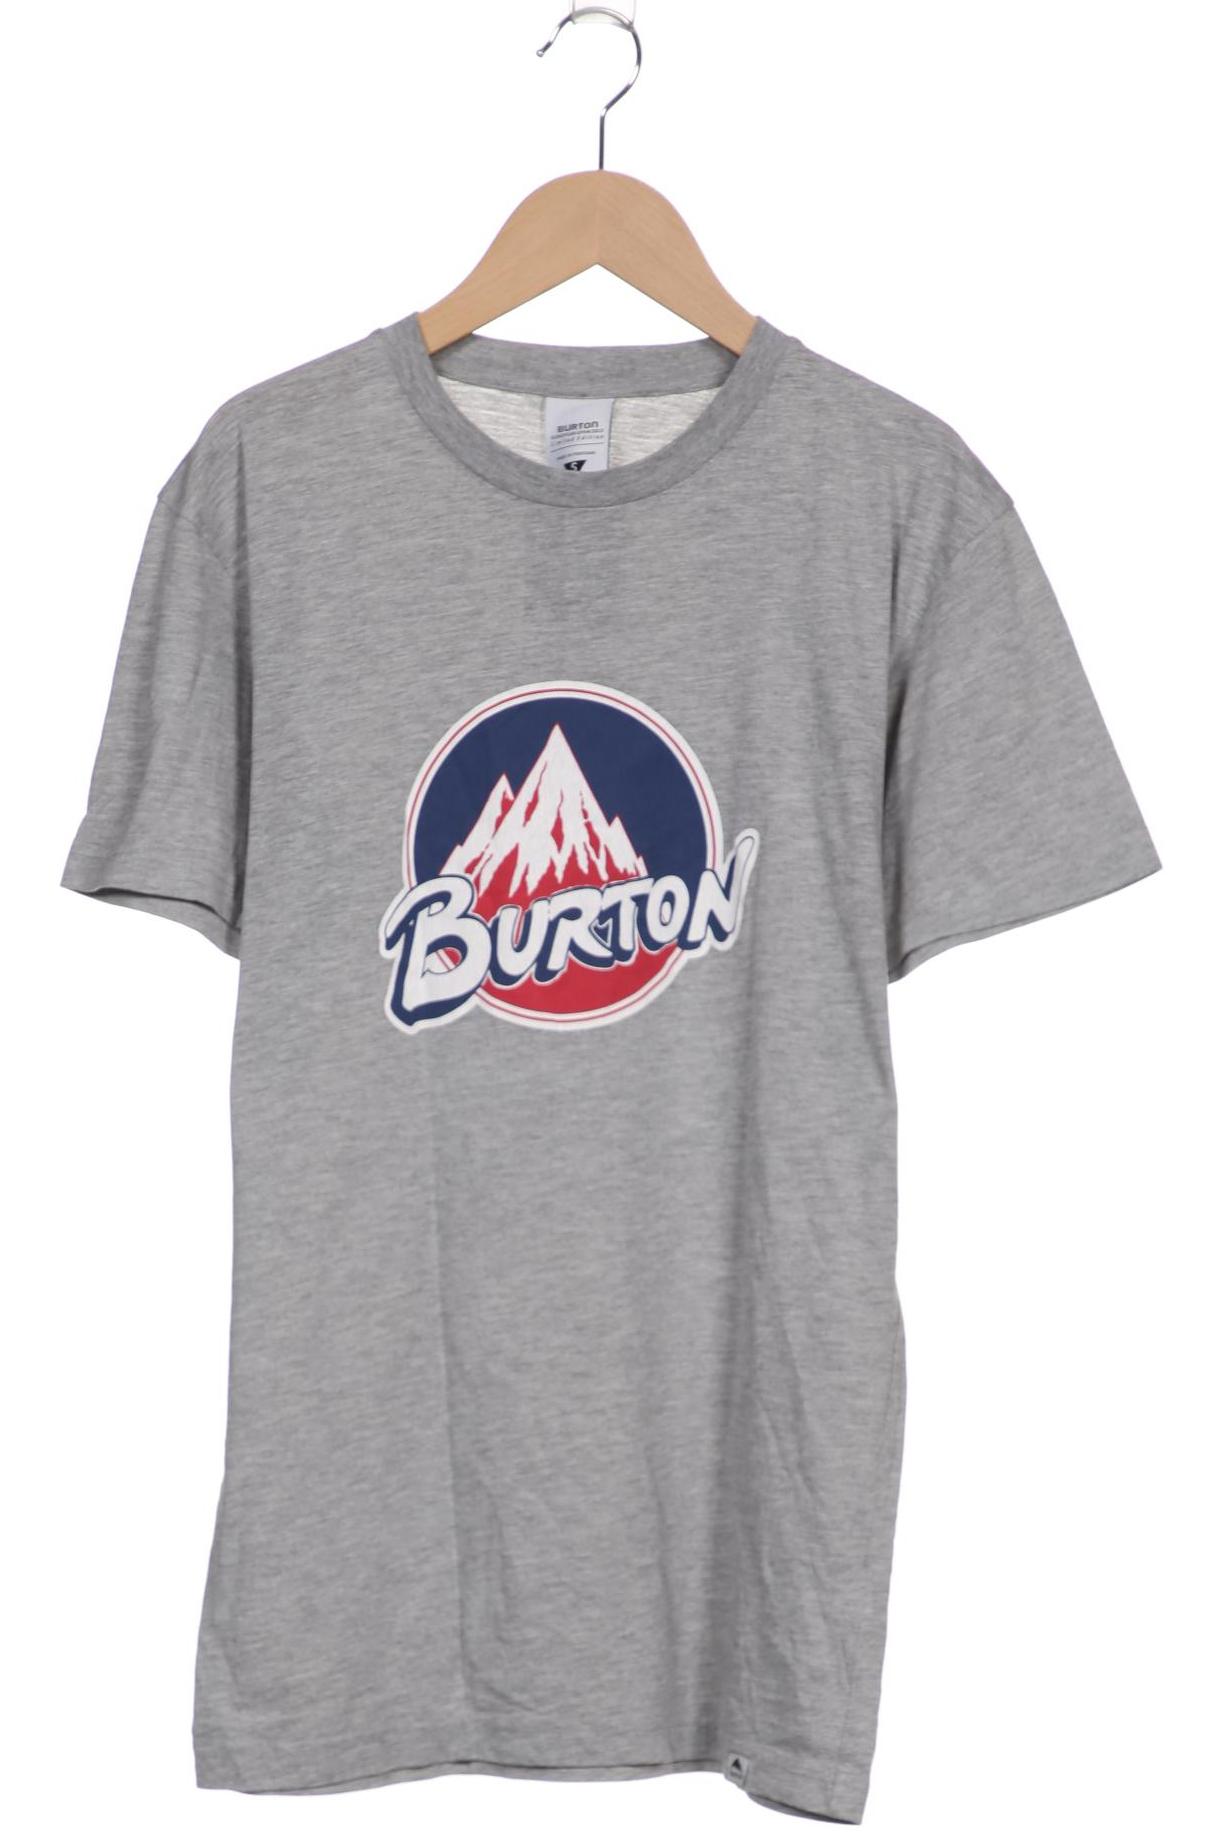 BURTON Herren T-Shirt, grau von Burton